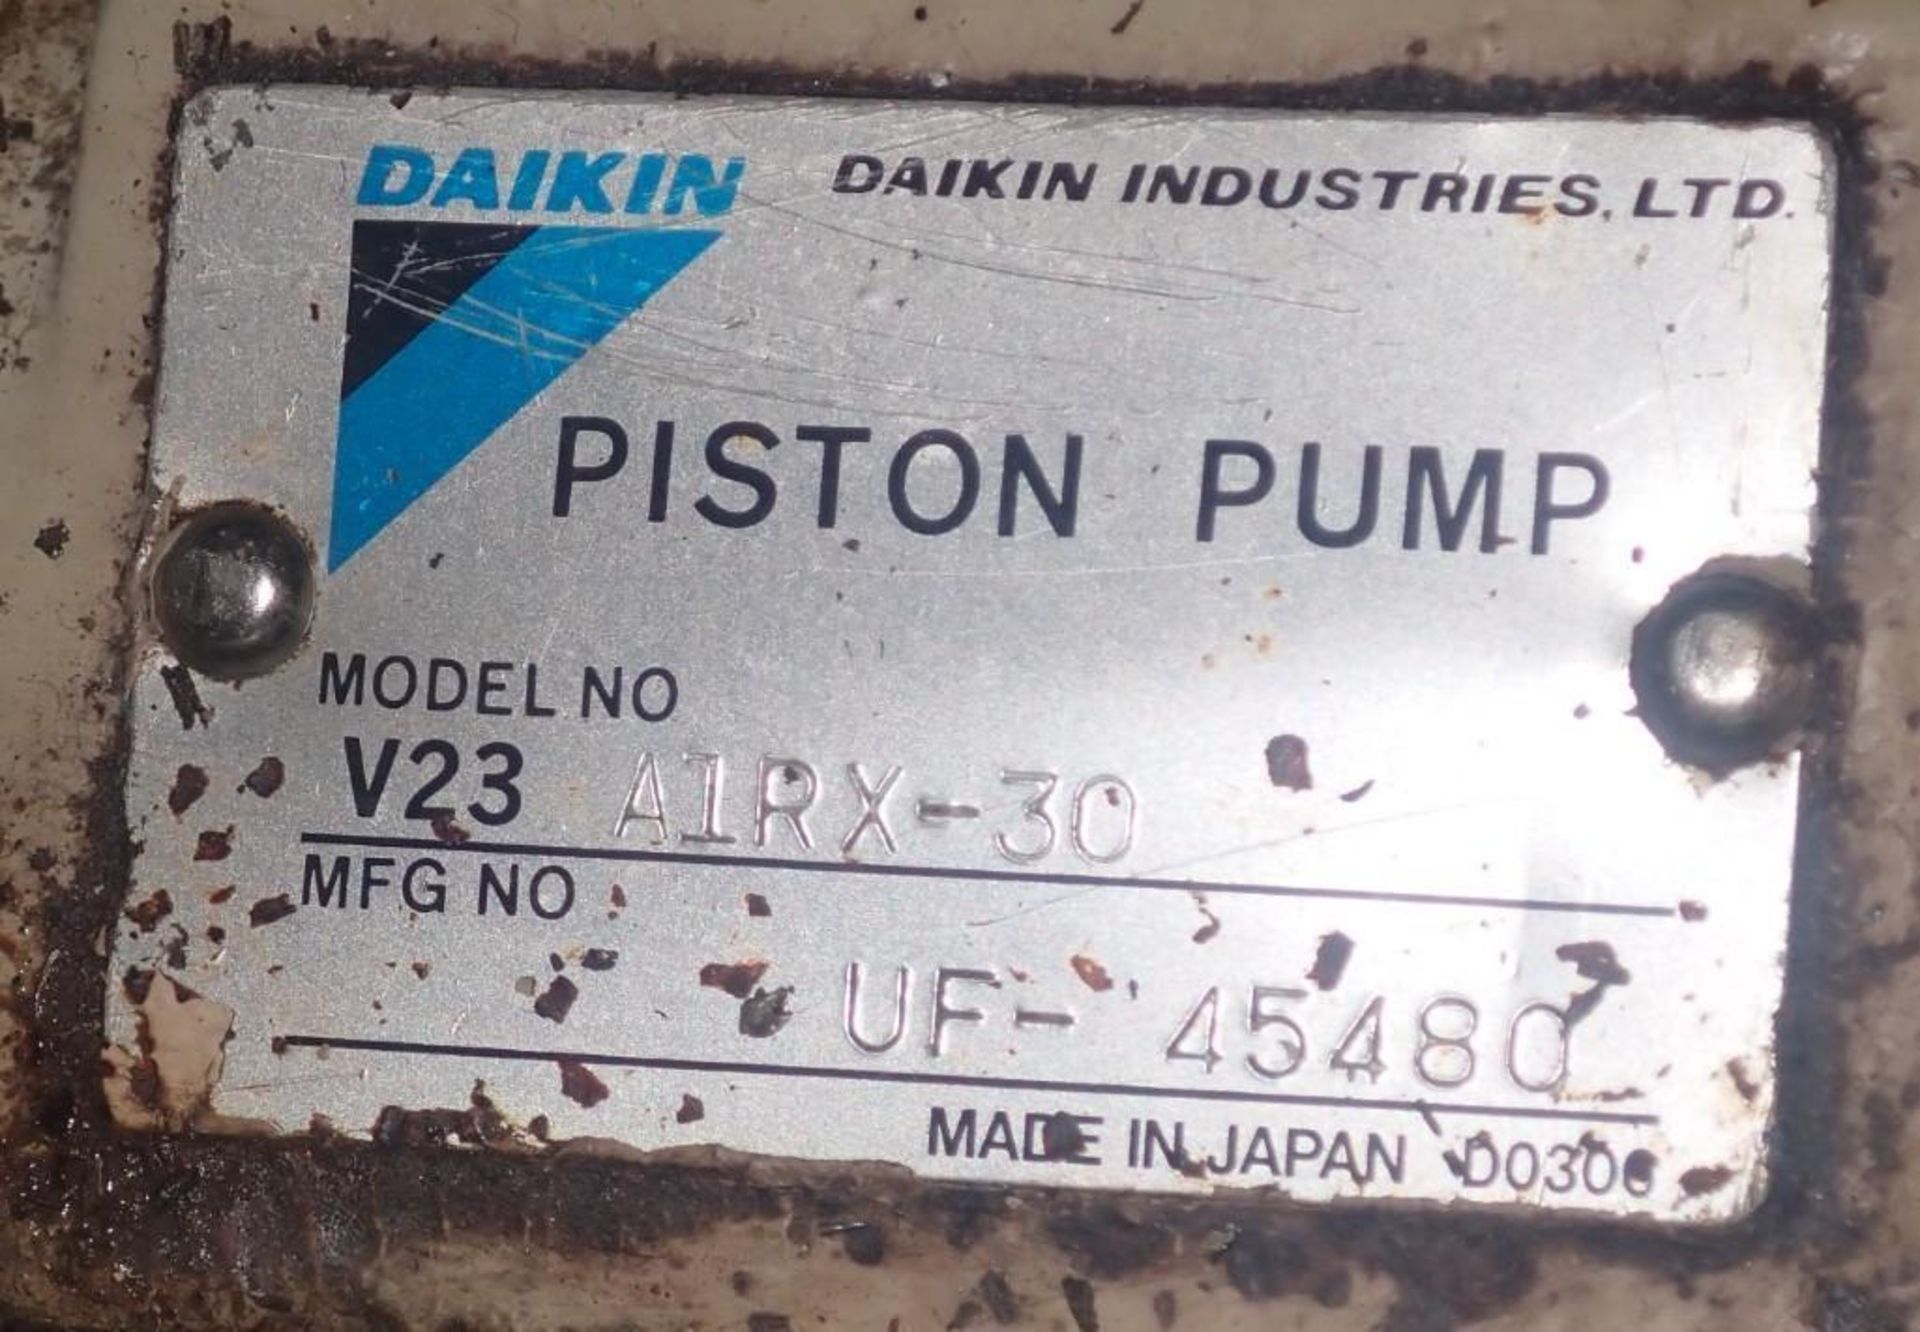 Daikin # V23 A1RX-30 Hydraulic Piston Pump - Image 3 of 3